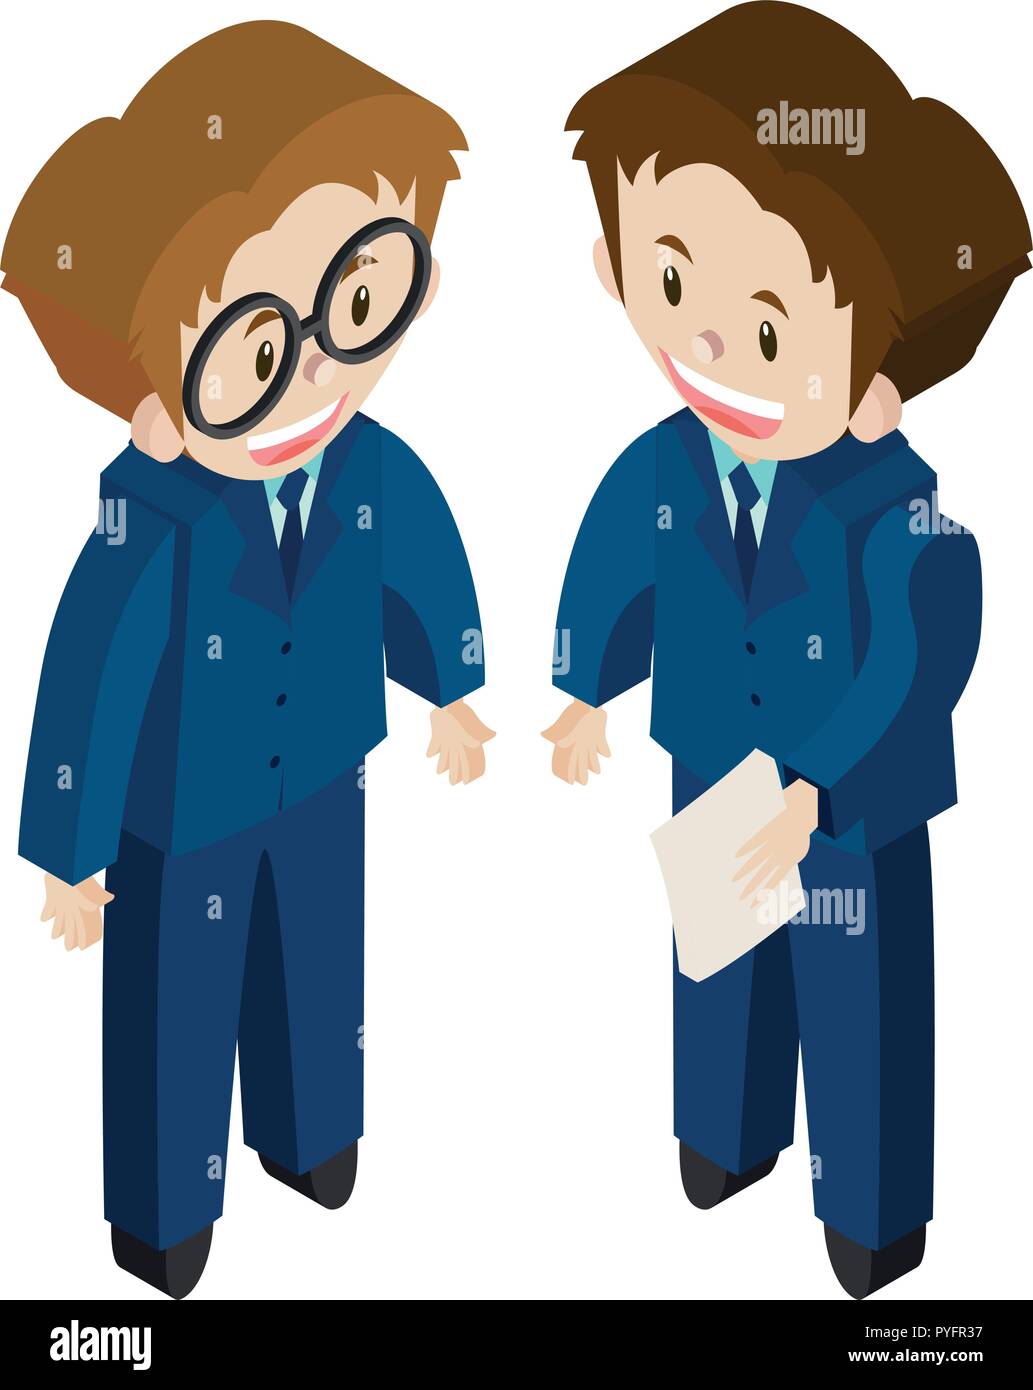 3D design for two businessmen illustration Stock Vector